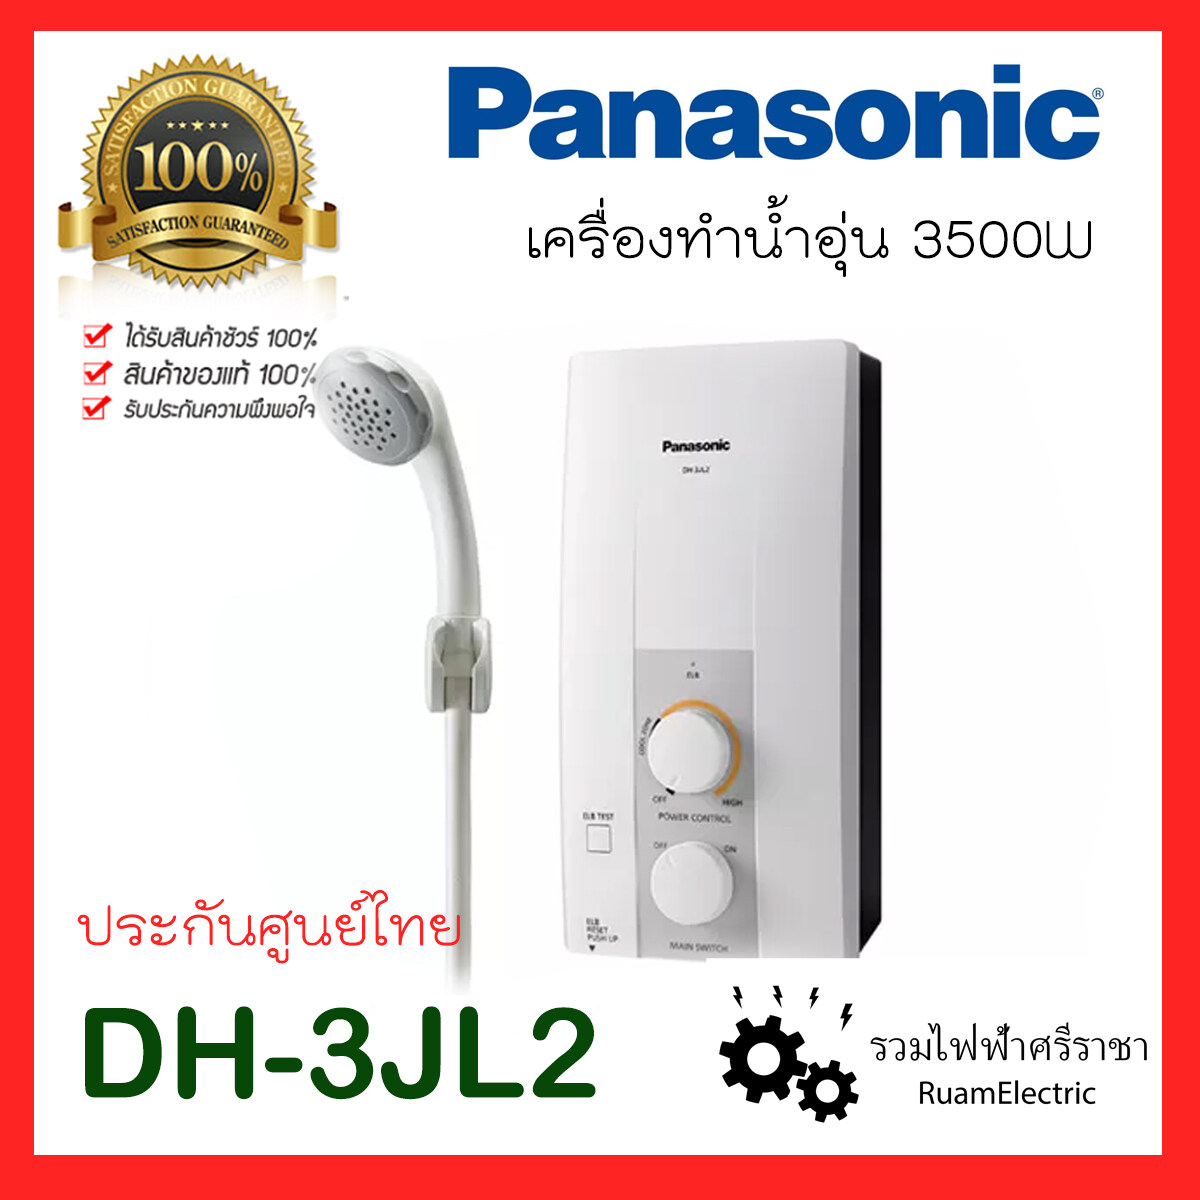 ช้อป เครื่องทำน้ำอุ่น Panasonic ออนไลน์ | Lazada.Co.Th